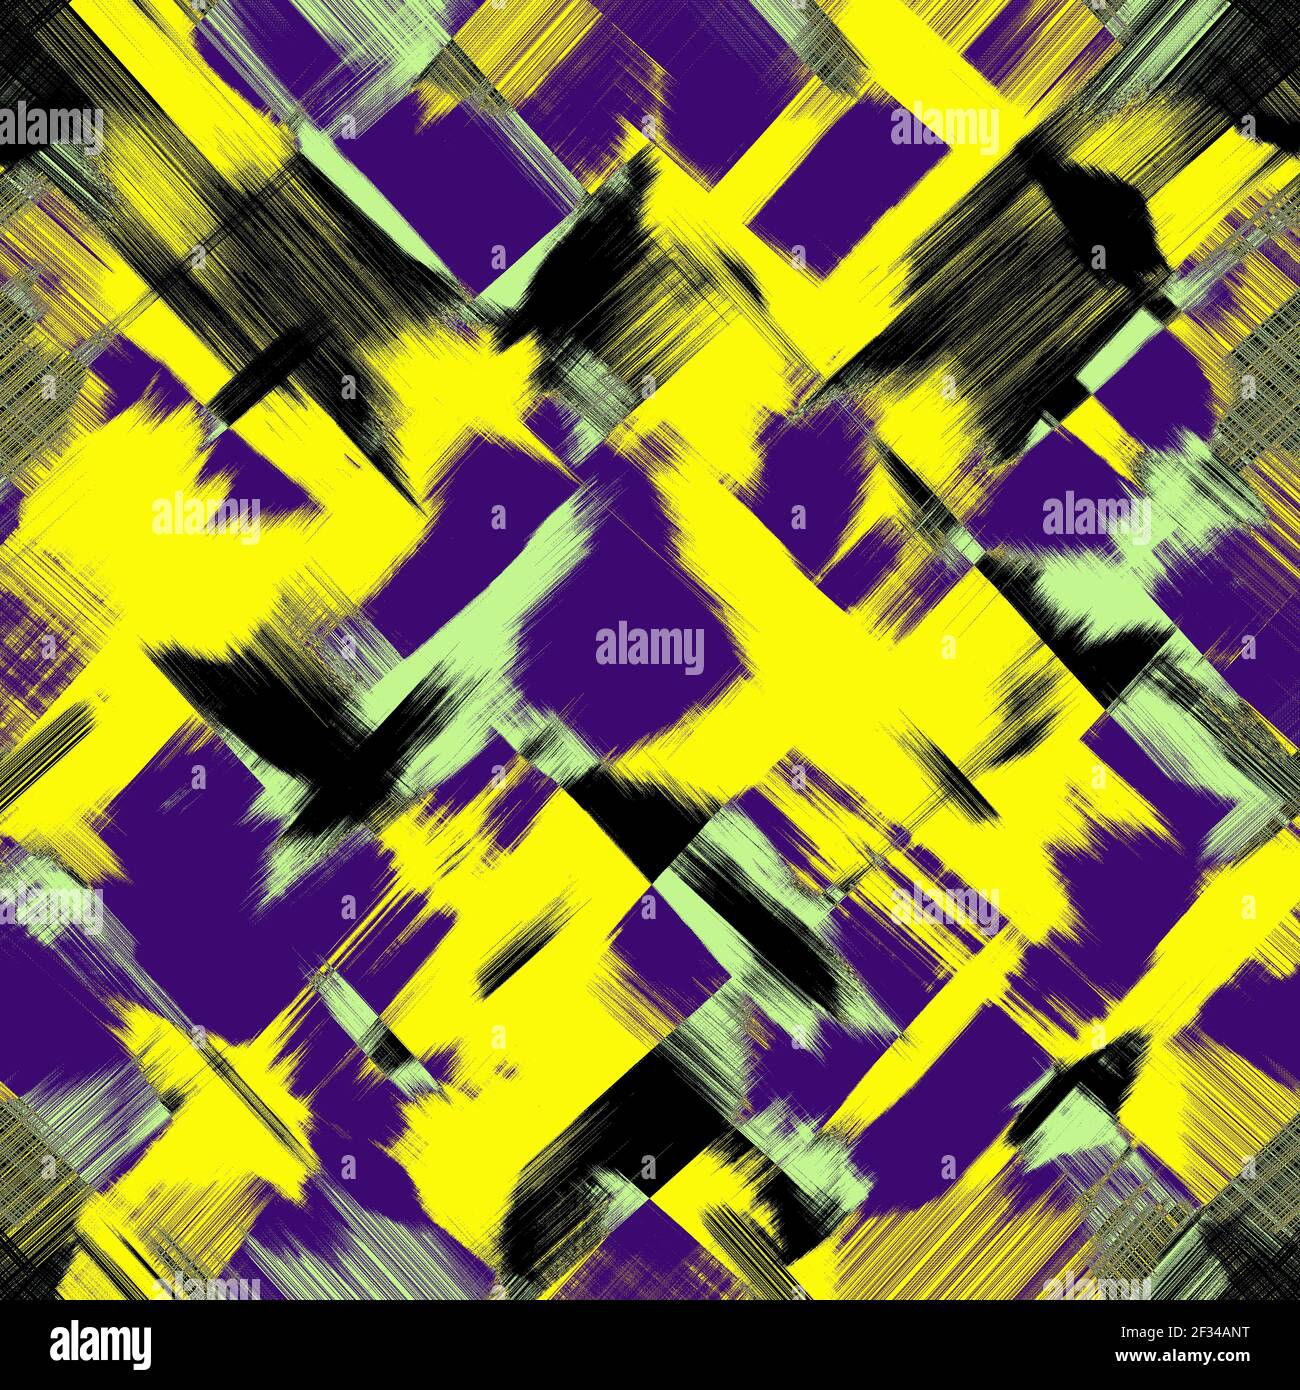 Lila, violett, grün, schwarze Flecken, Pinselstriche, Gelber Hintergrund. Grunge abstrakte Muster, digitale Malerei Imitation. Modernes, stilvolles Design Stockfoto